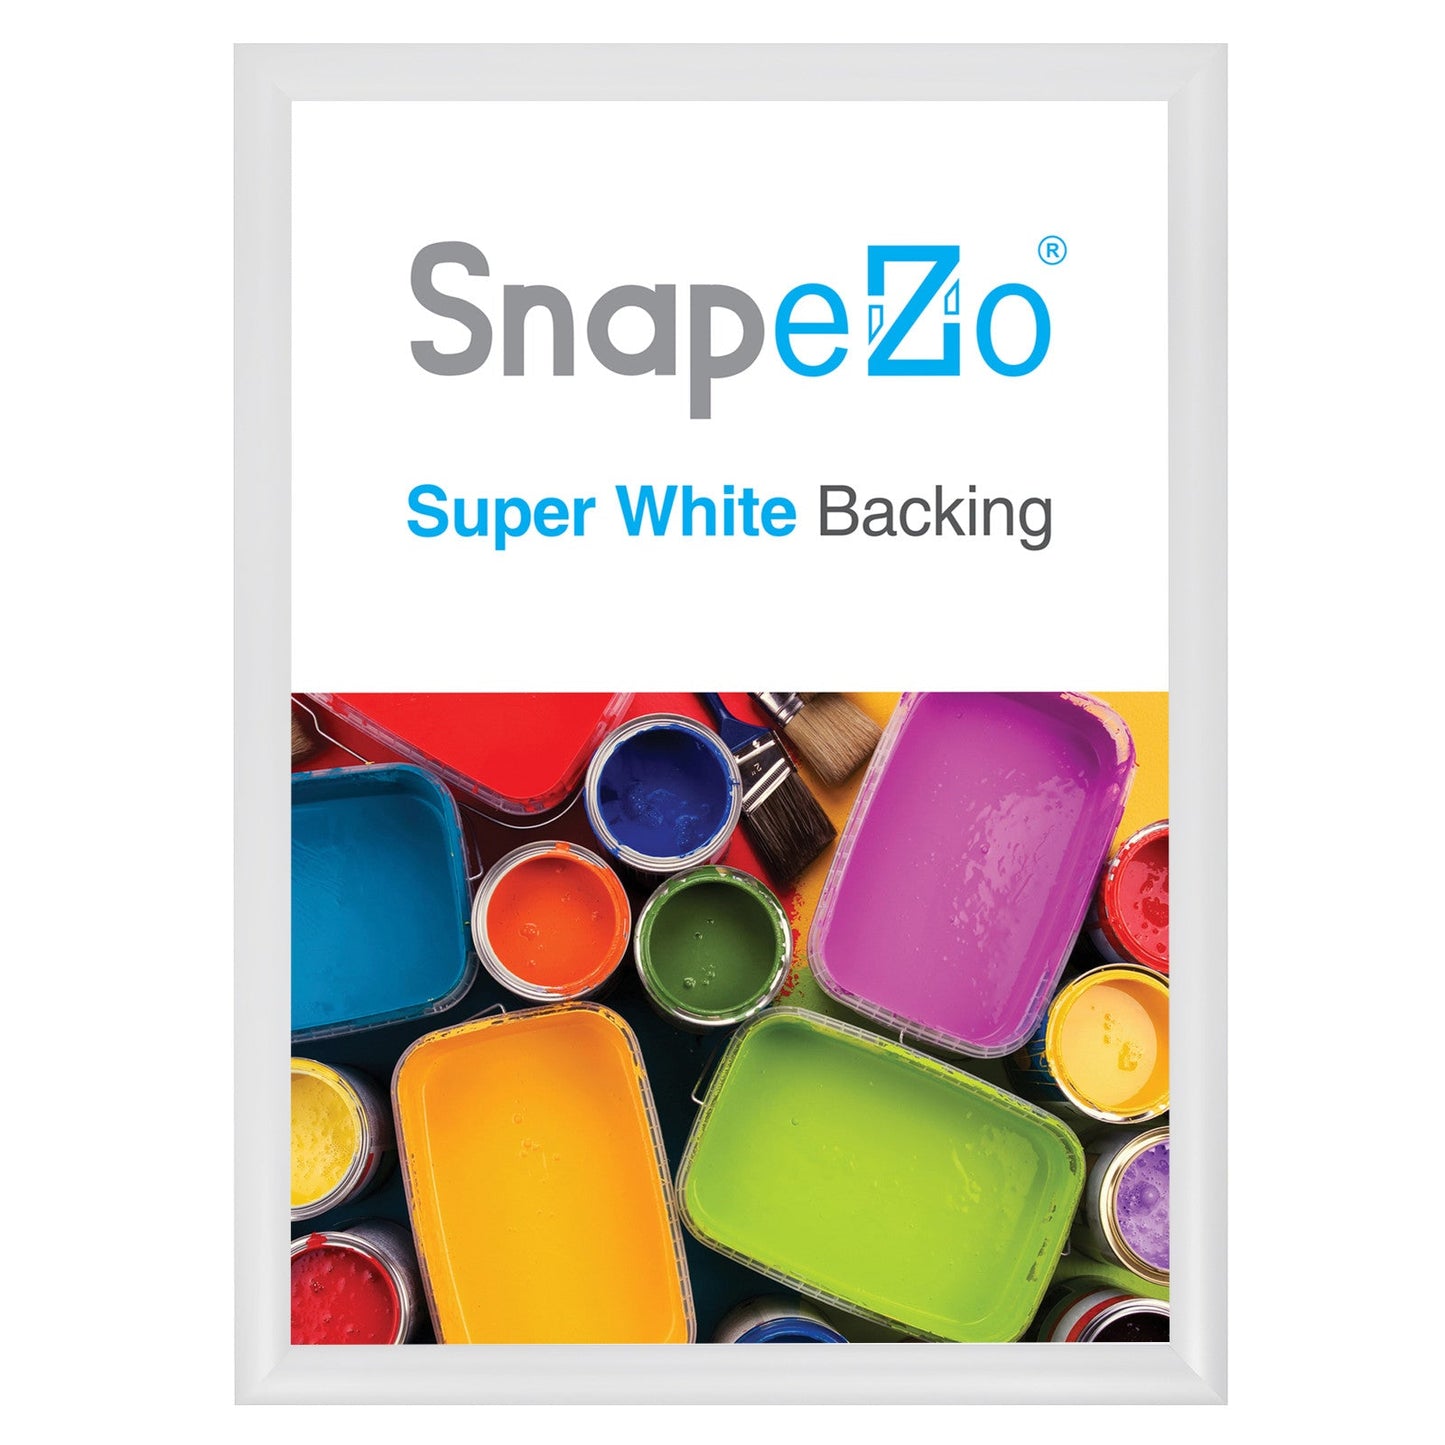 A3 White SnapeZo® Snap Frame - 1.2" Profile